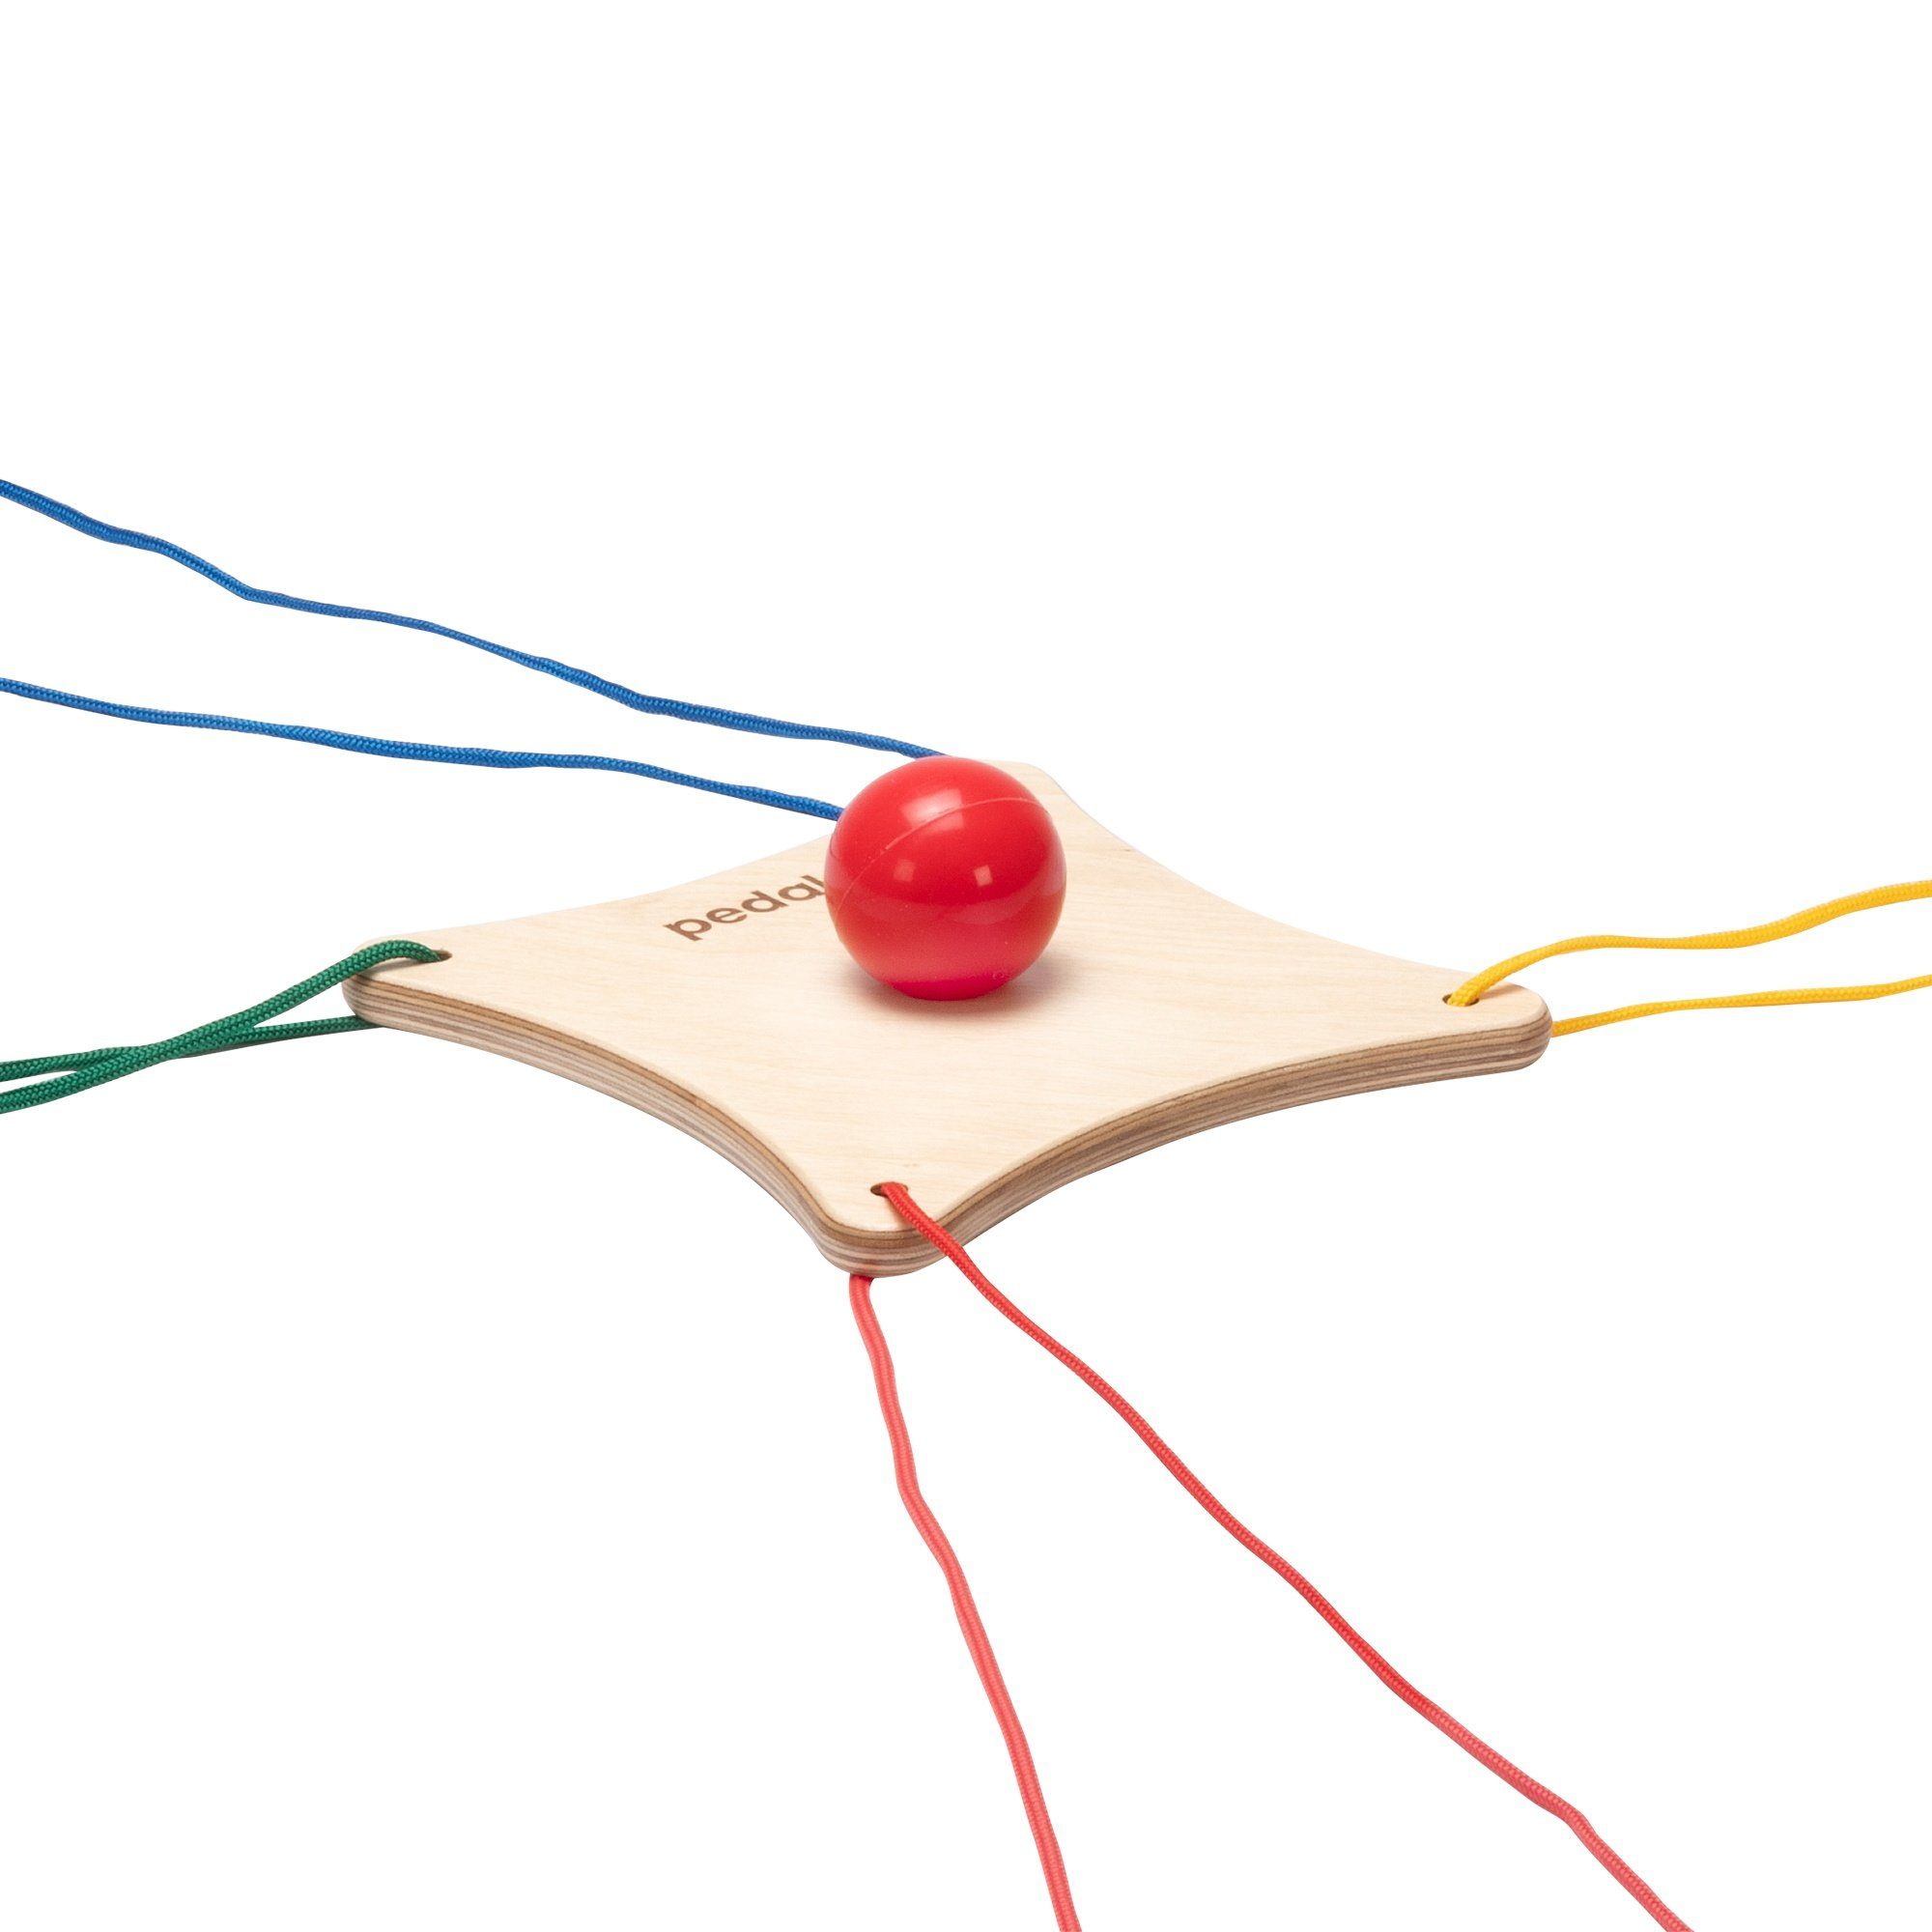 pedalo® Spielesammlung, Balancespiel in der Gruppe Teamspiel Balancierteller, Koordination und Kommunikation, made in germany, 4 Seile, 1 Brett, 1 Ball